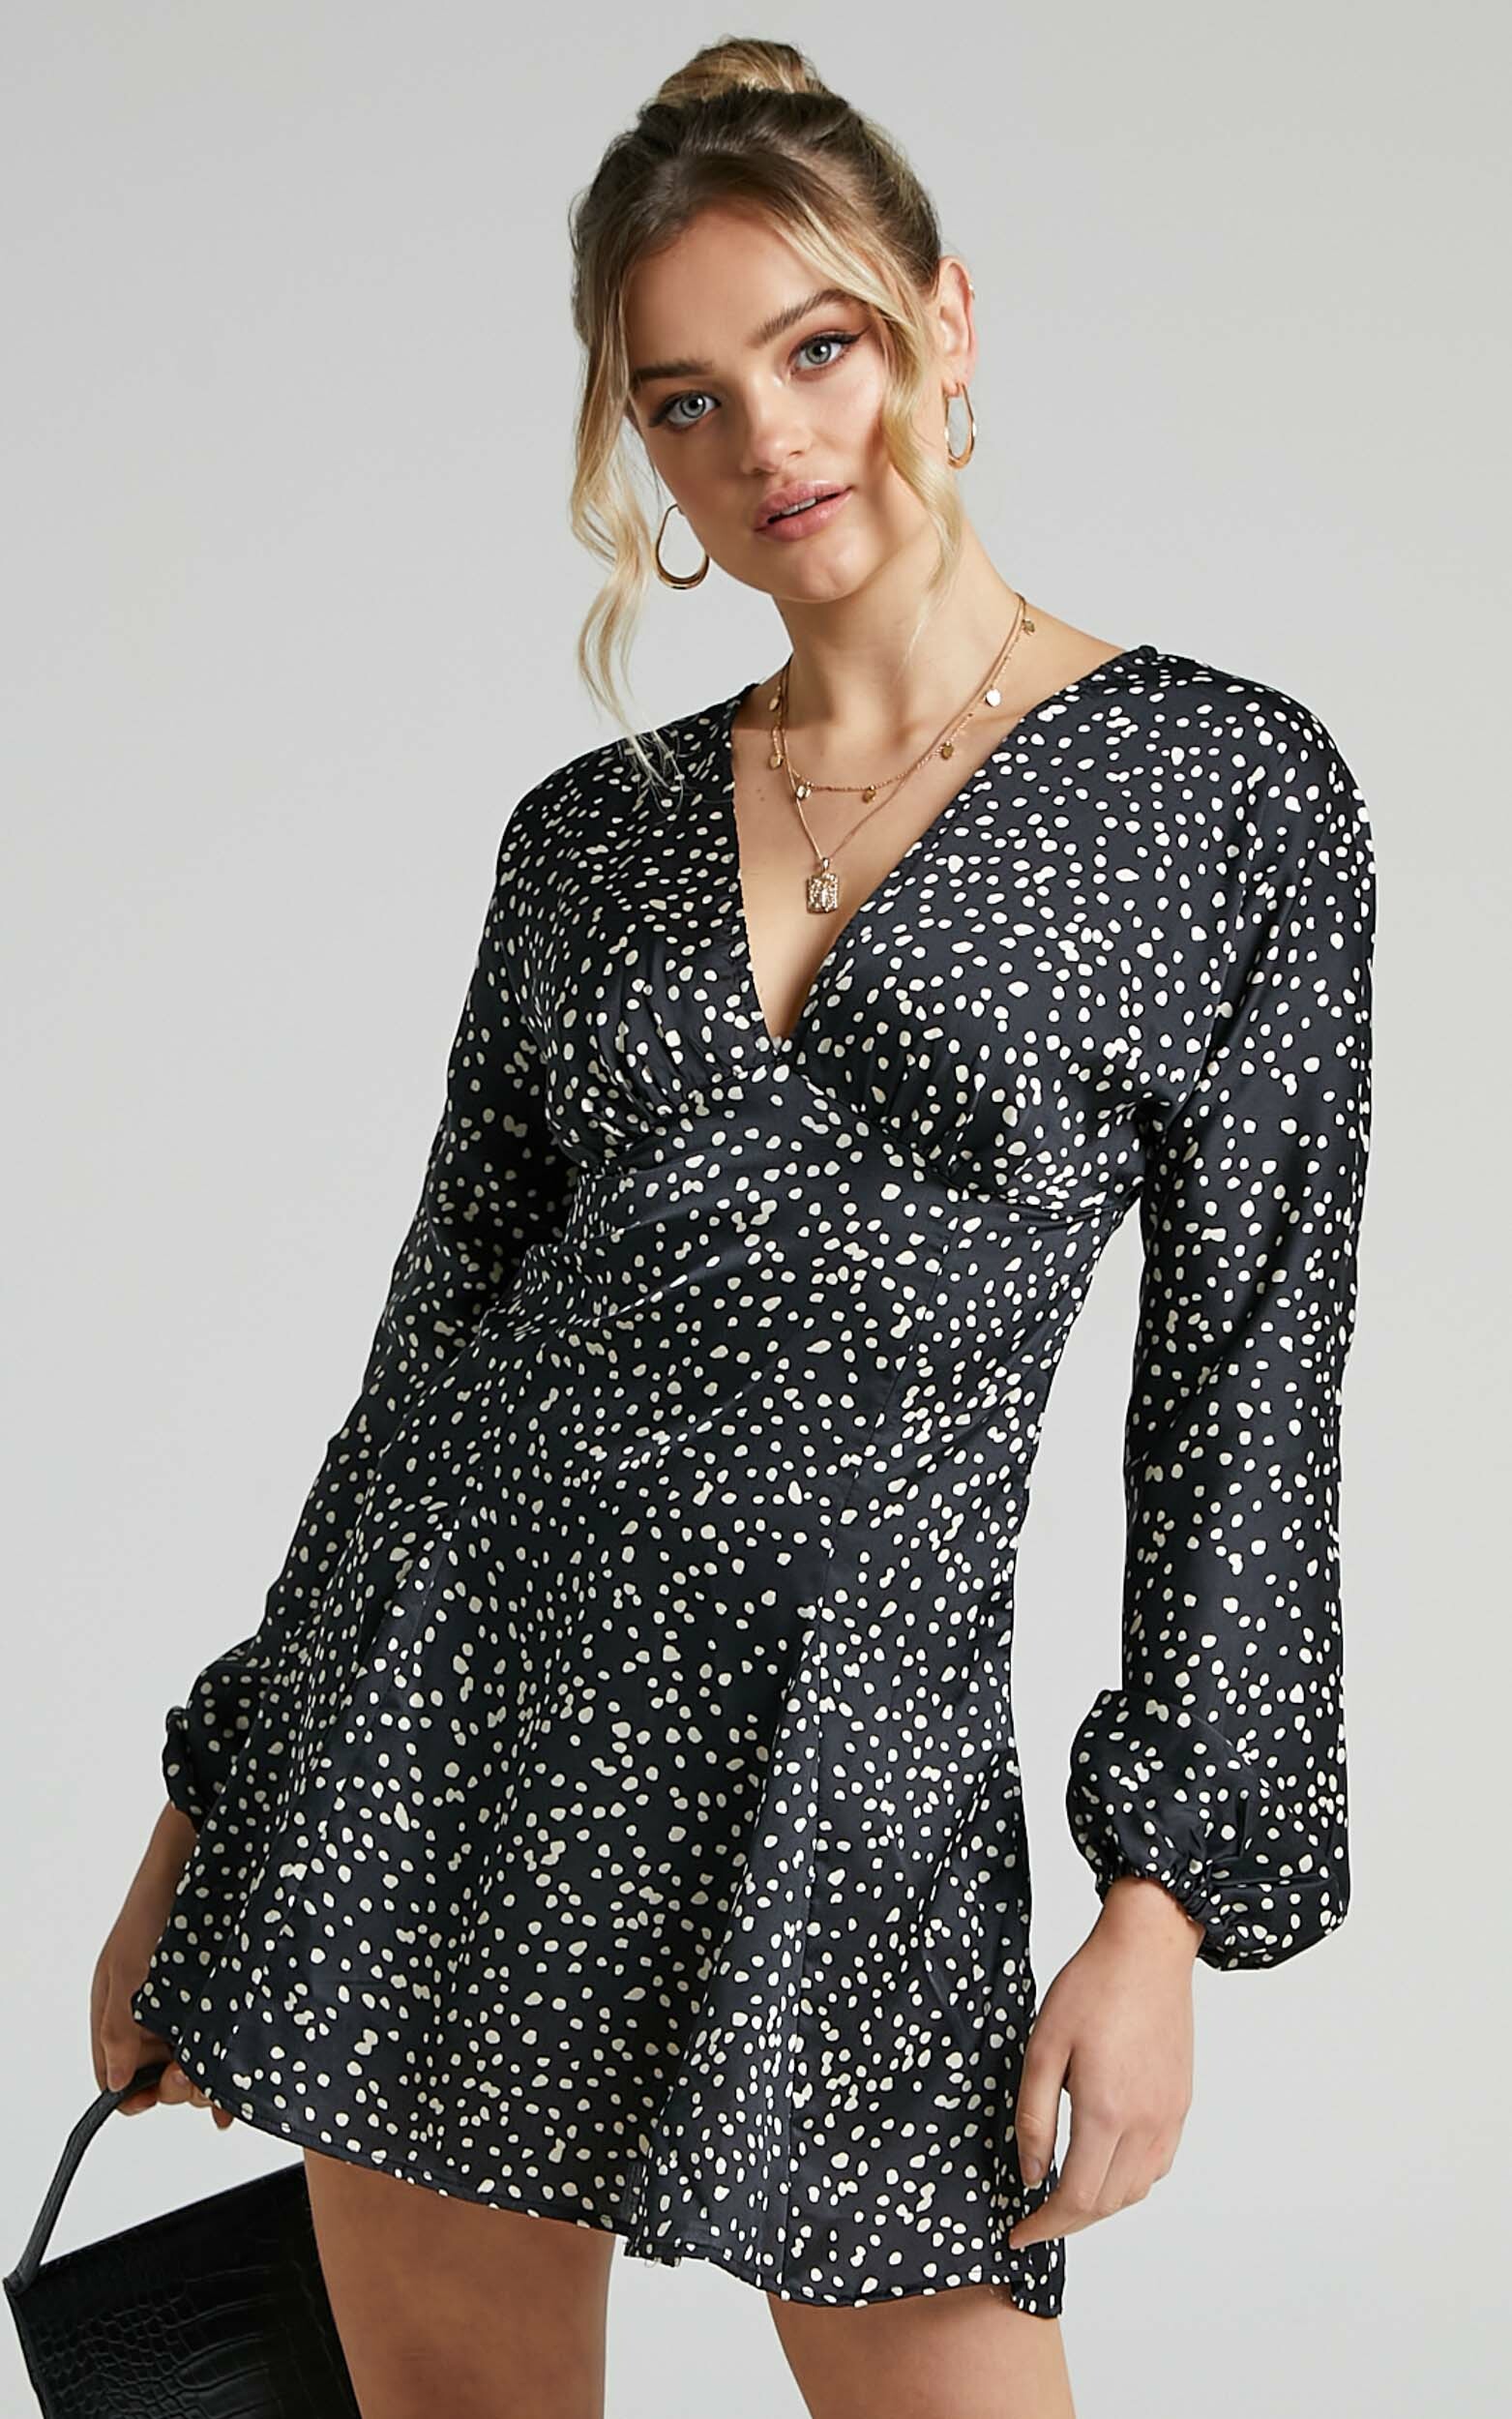 Eska Long Sleeve Godet Mini Dress in Black Spot - 06, BLK1, hi-res image number null